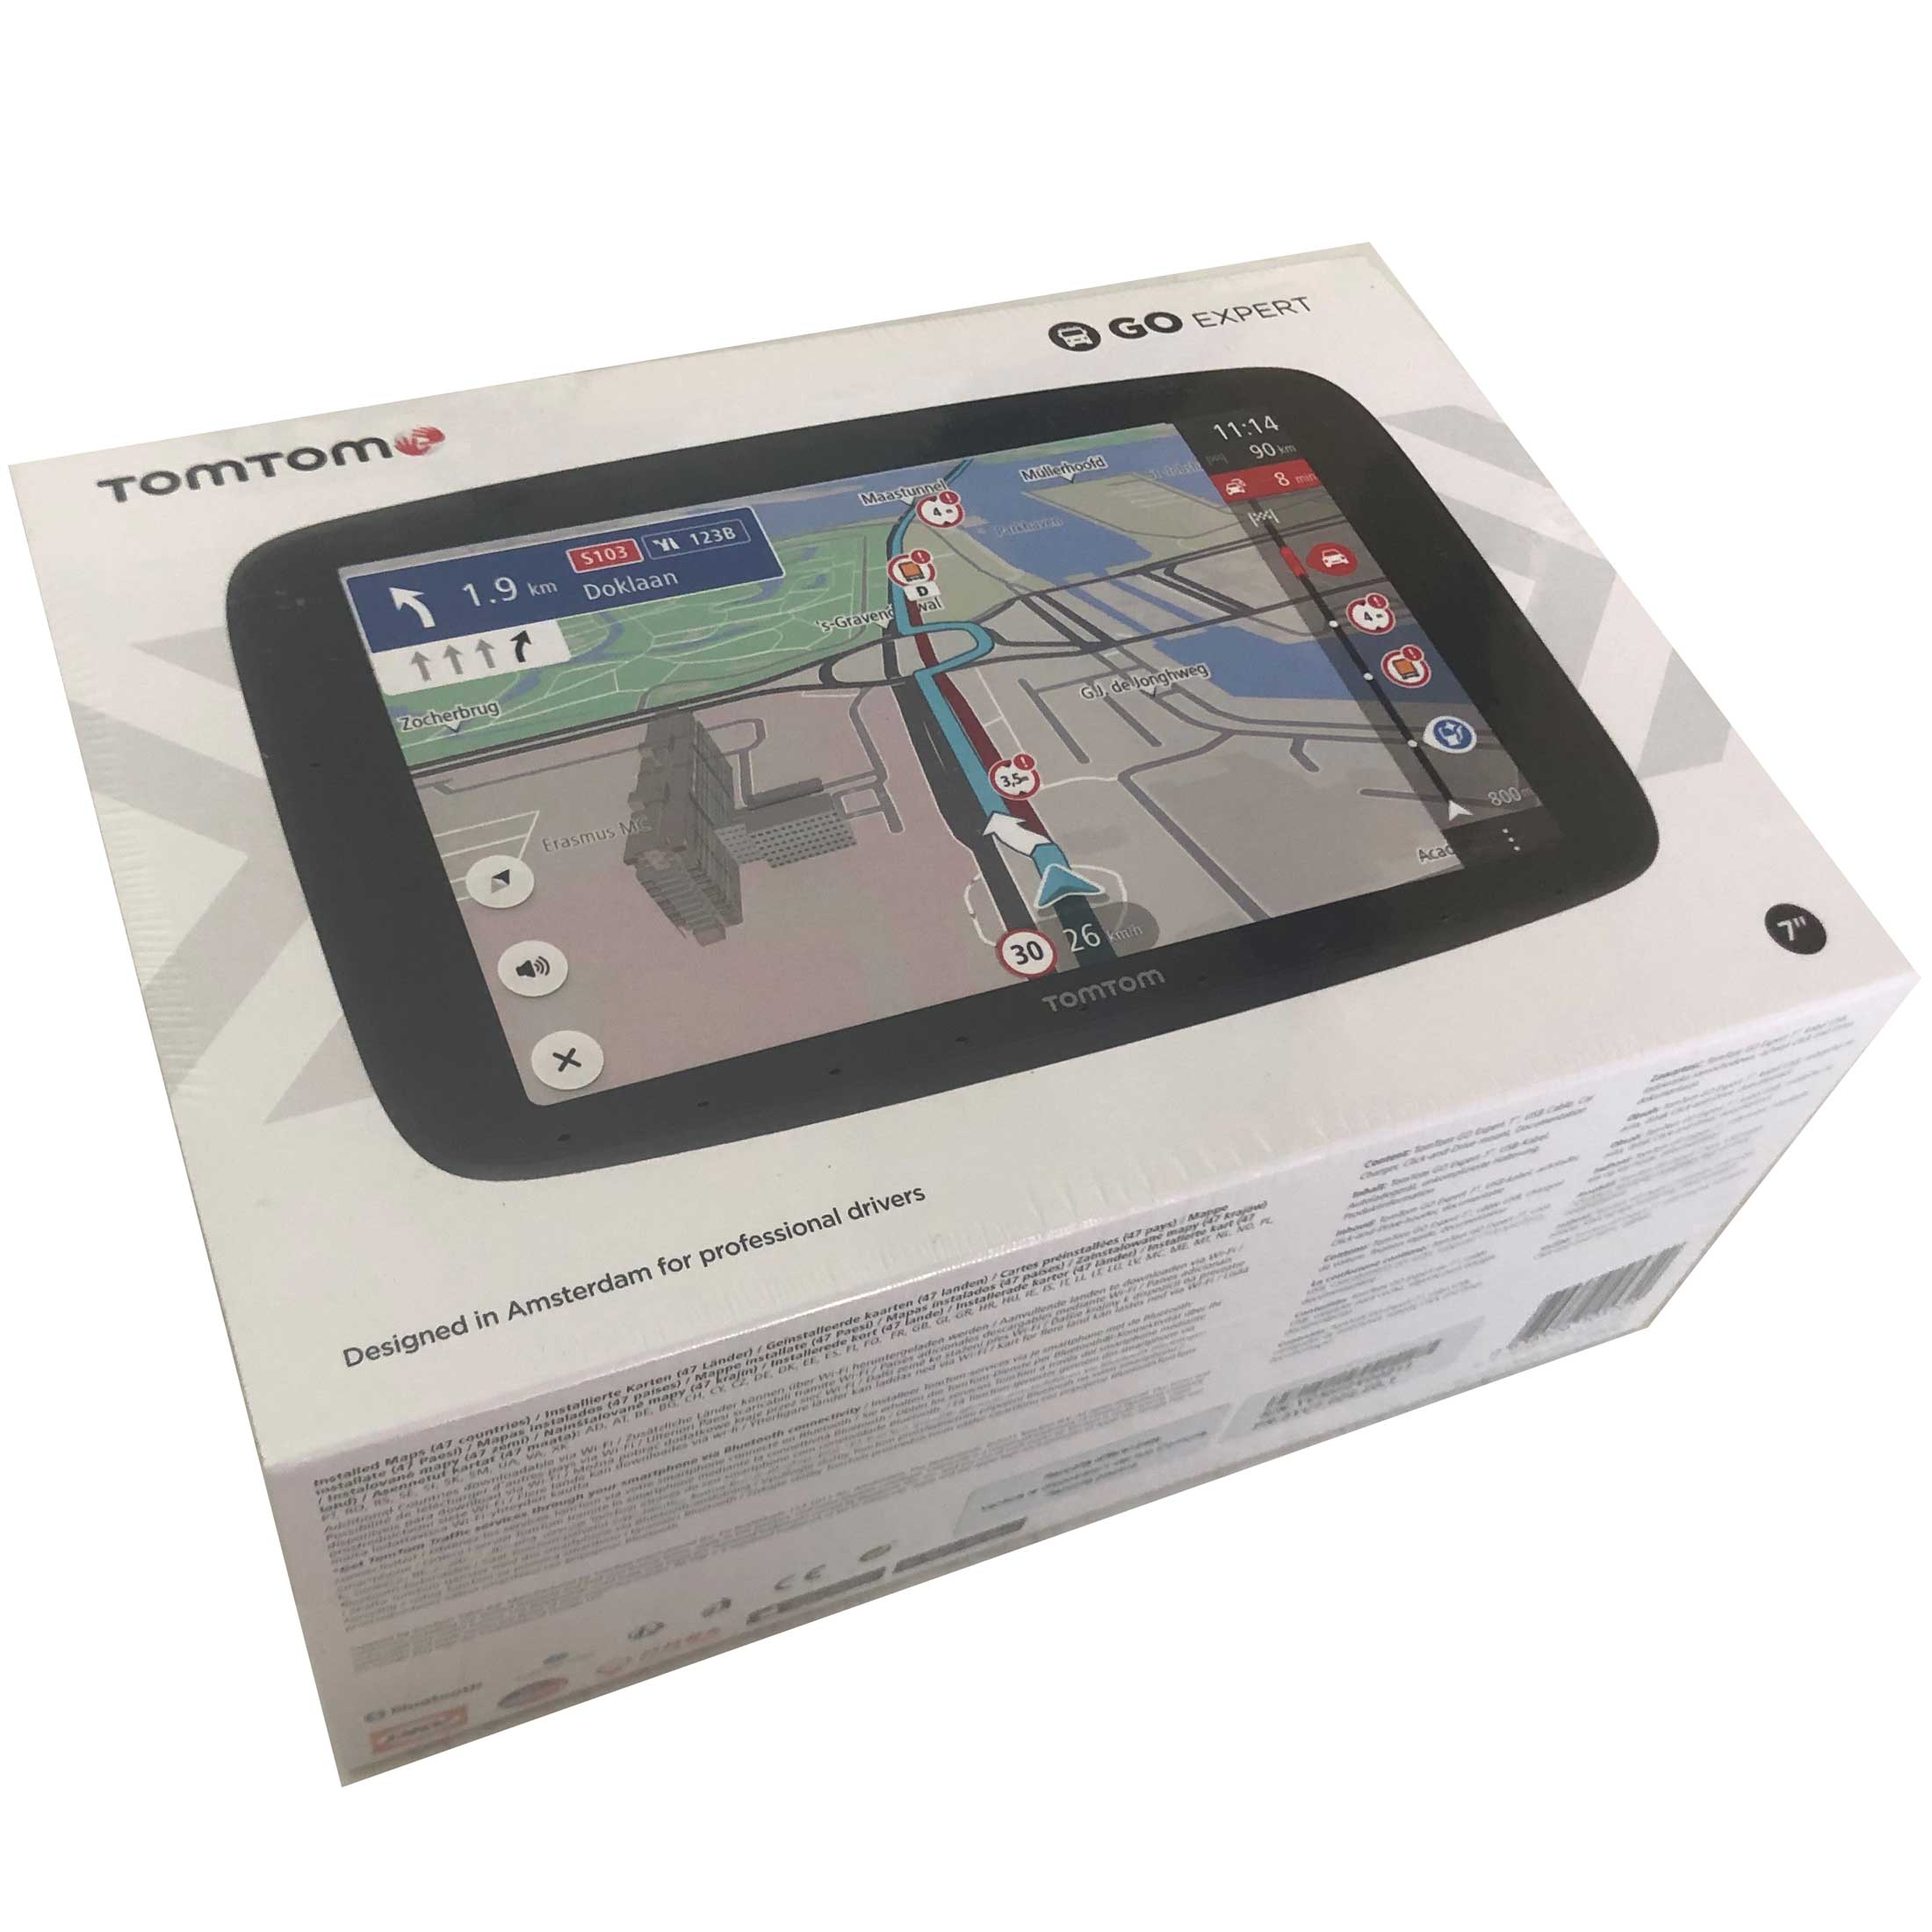 GPS poids lourd - TOM TOM - GO Expert Plus - Ecran HD 7 - Cartes mond